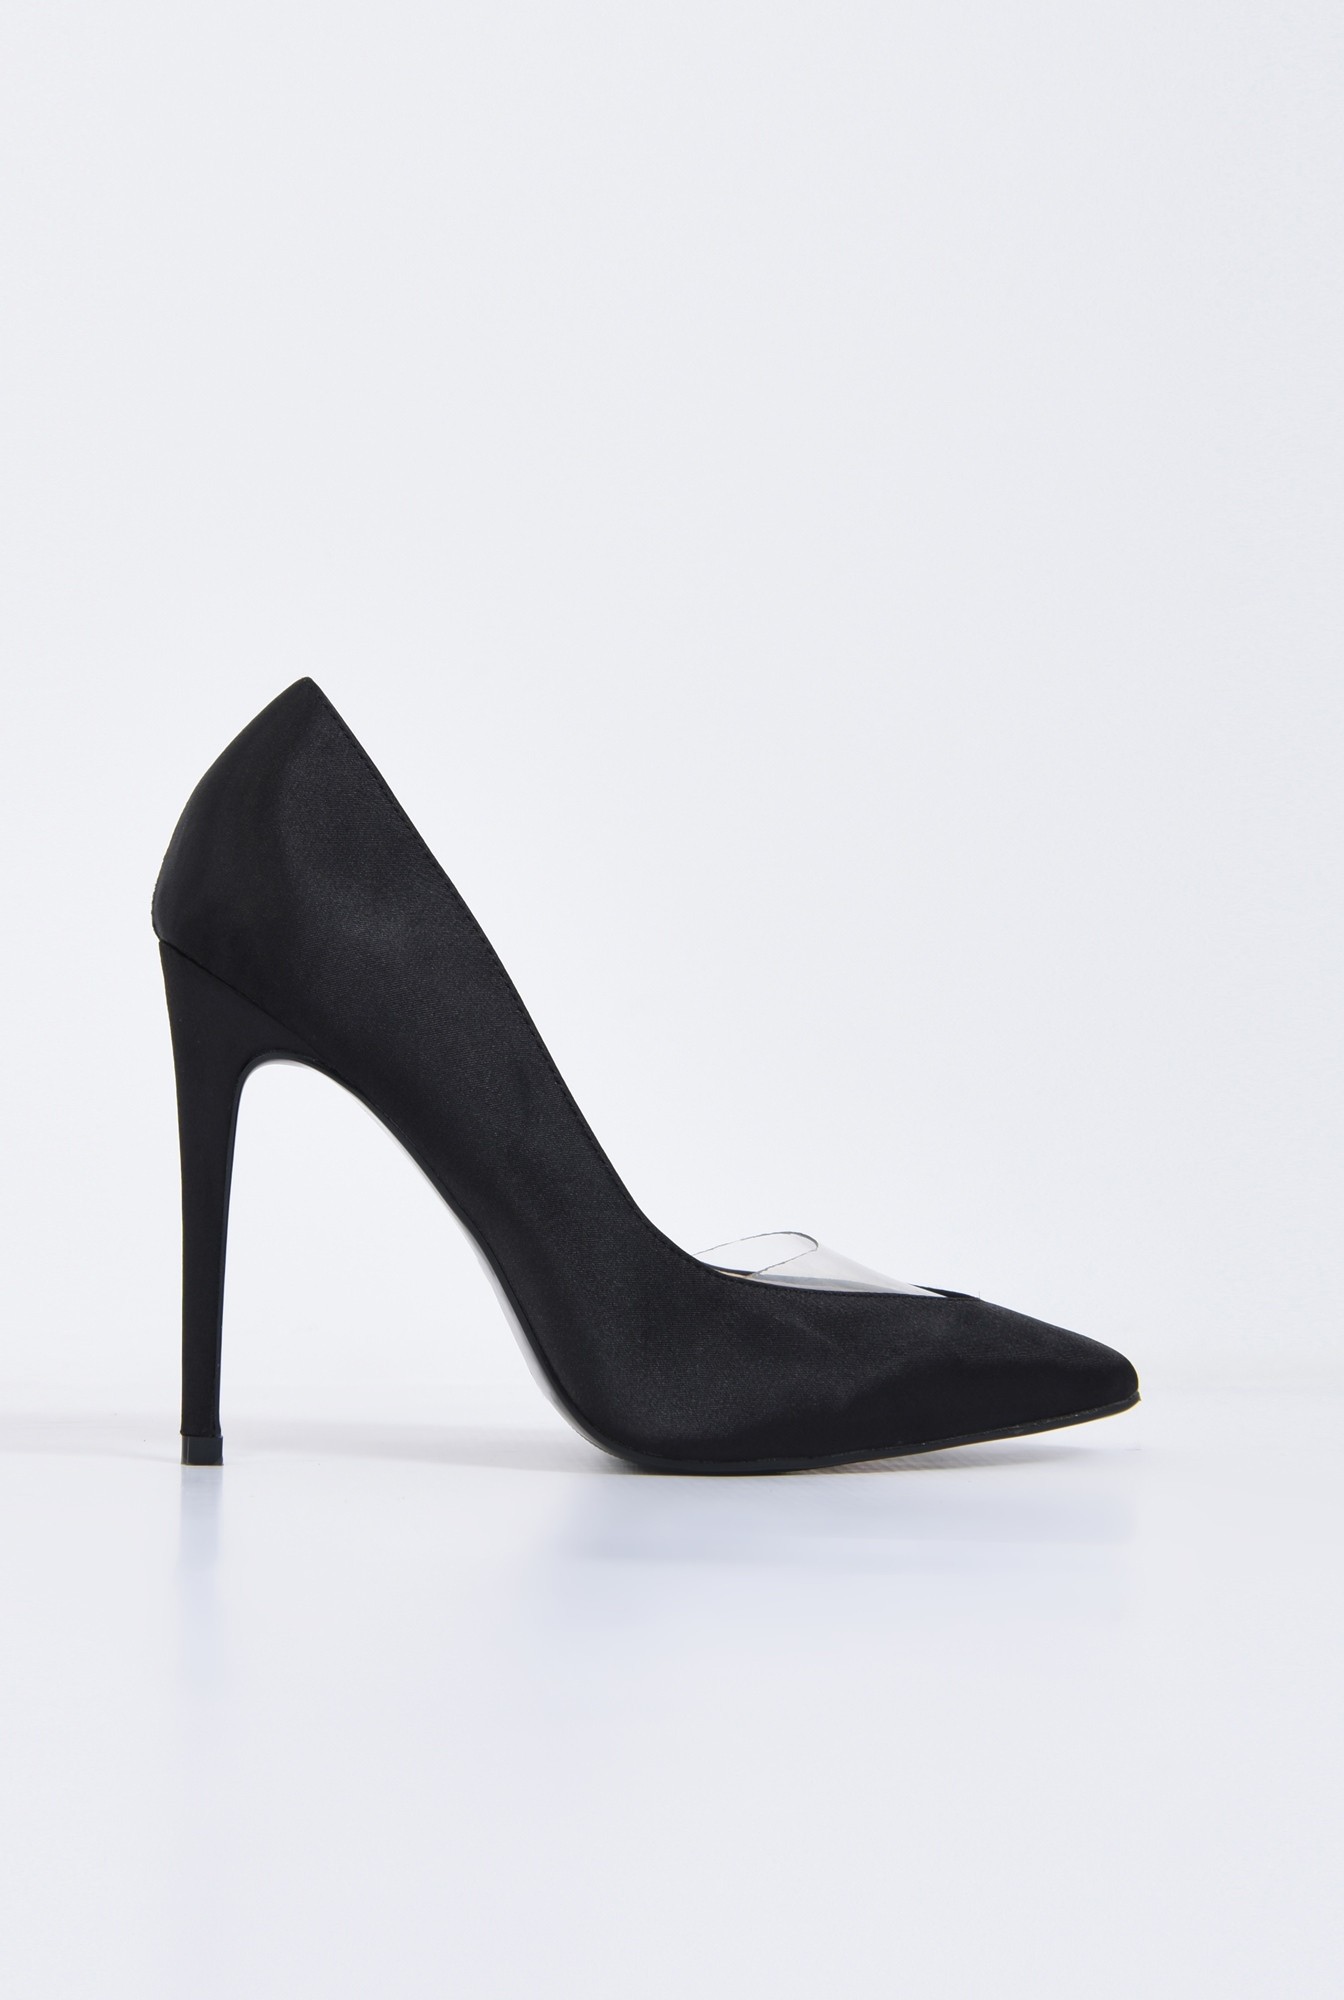 0 - pantofi eleganti, negru, satin, stiletto